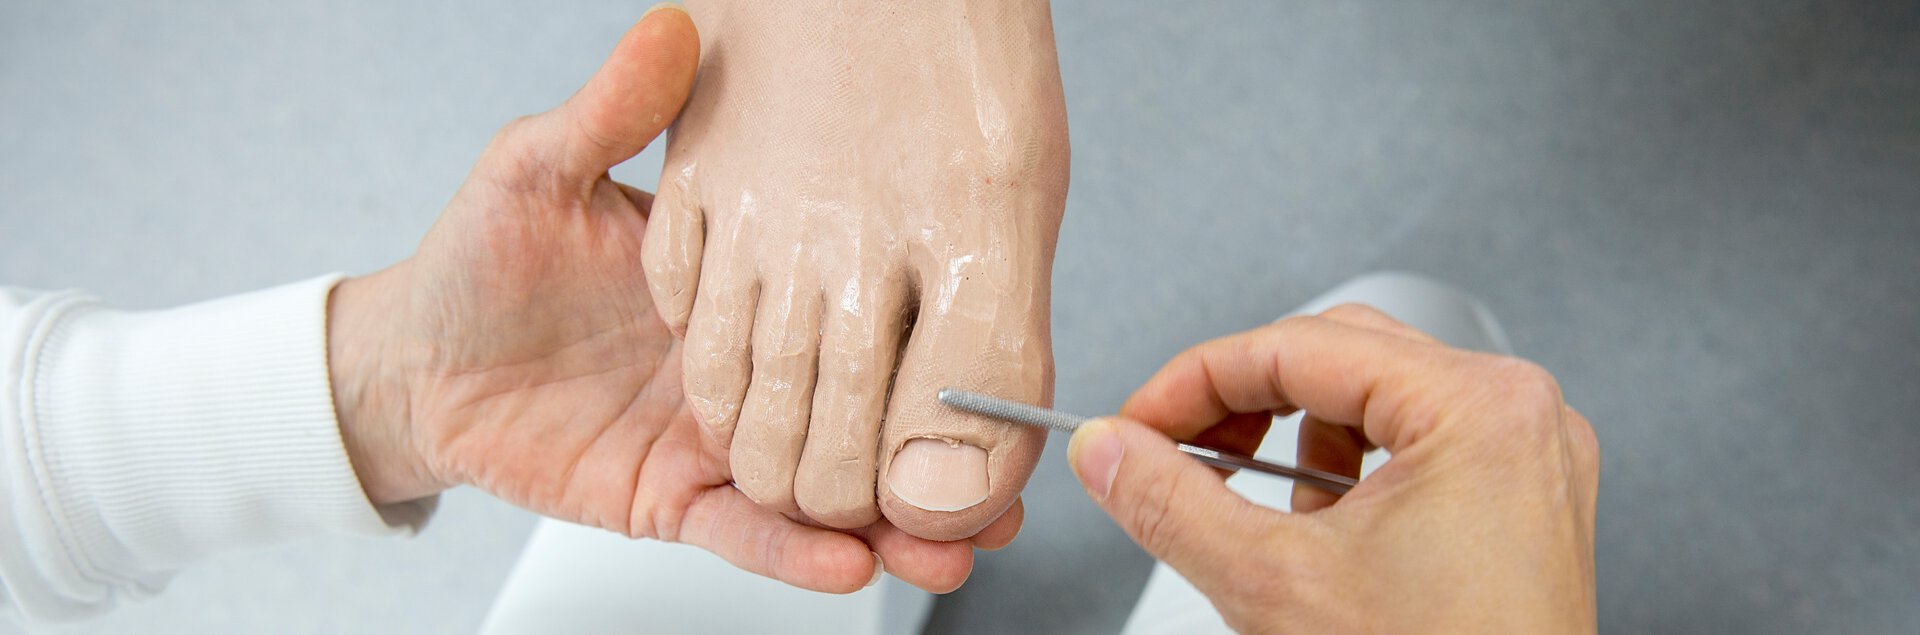 Herstellung einer Fußprothese | © Pohlig GmbH